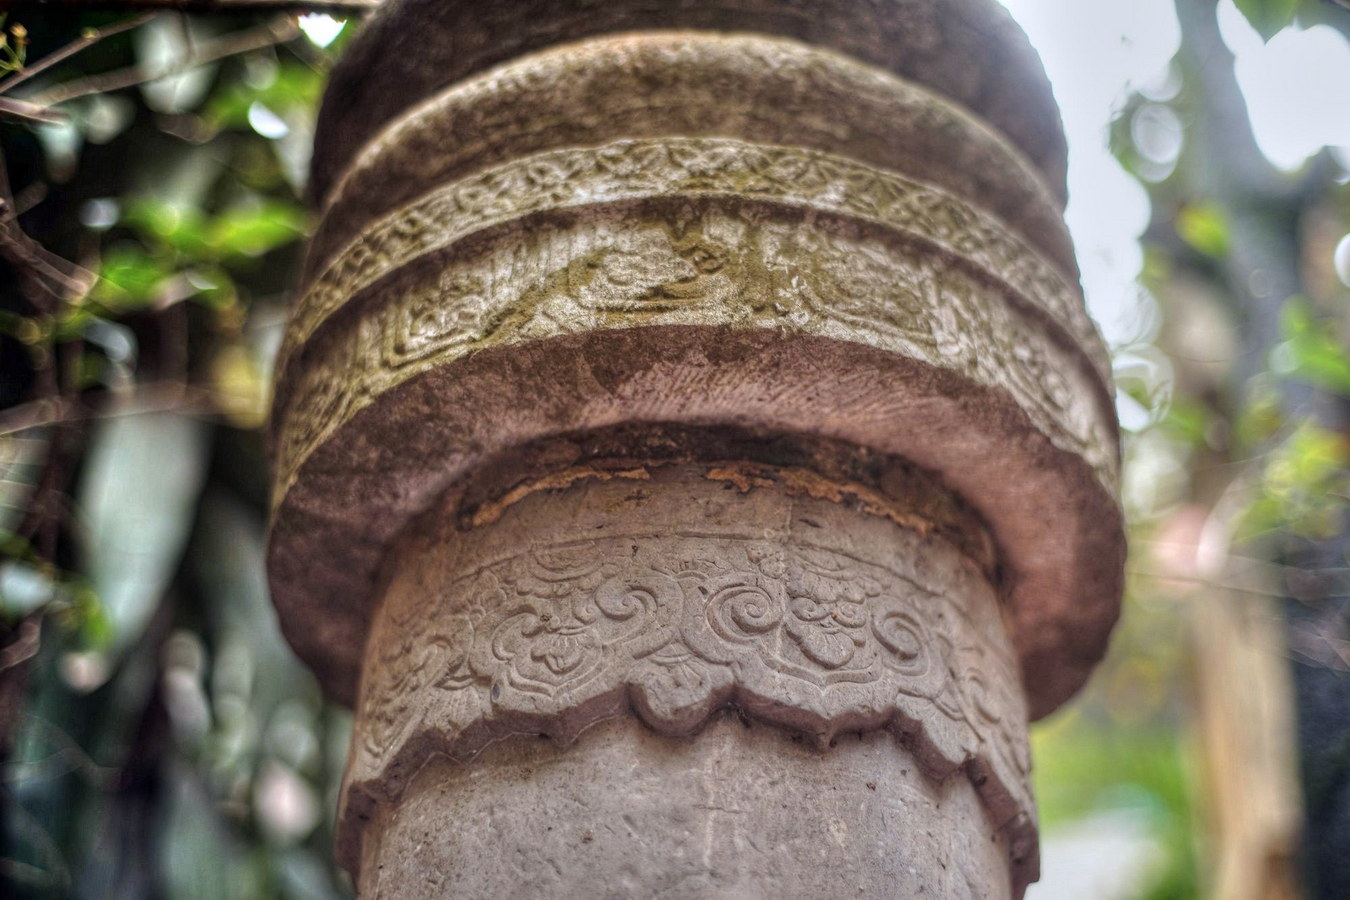 Chùm ảnh: Cận cảnh cột đá cổ bí ẩn ‘mọc lên’ giữa phố cổ Hà Nội